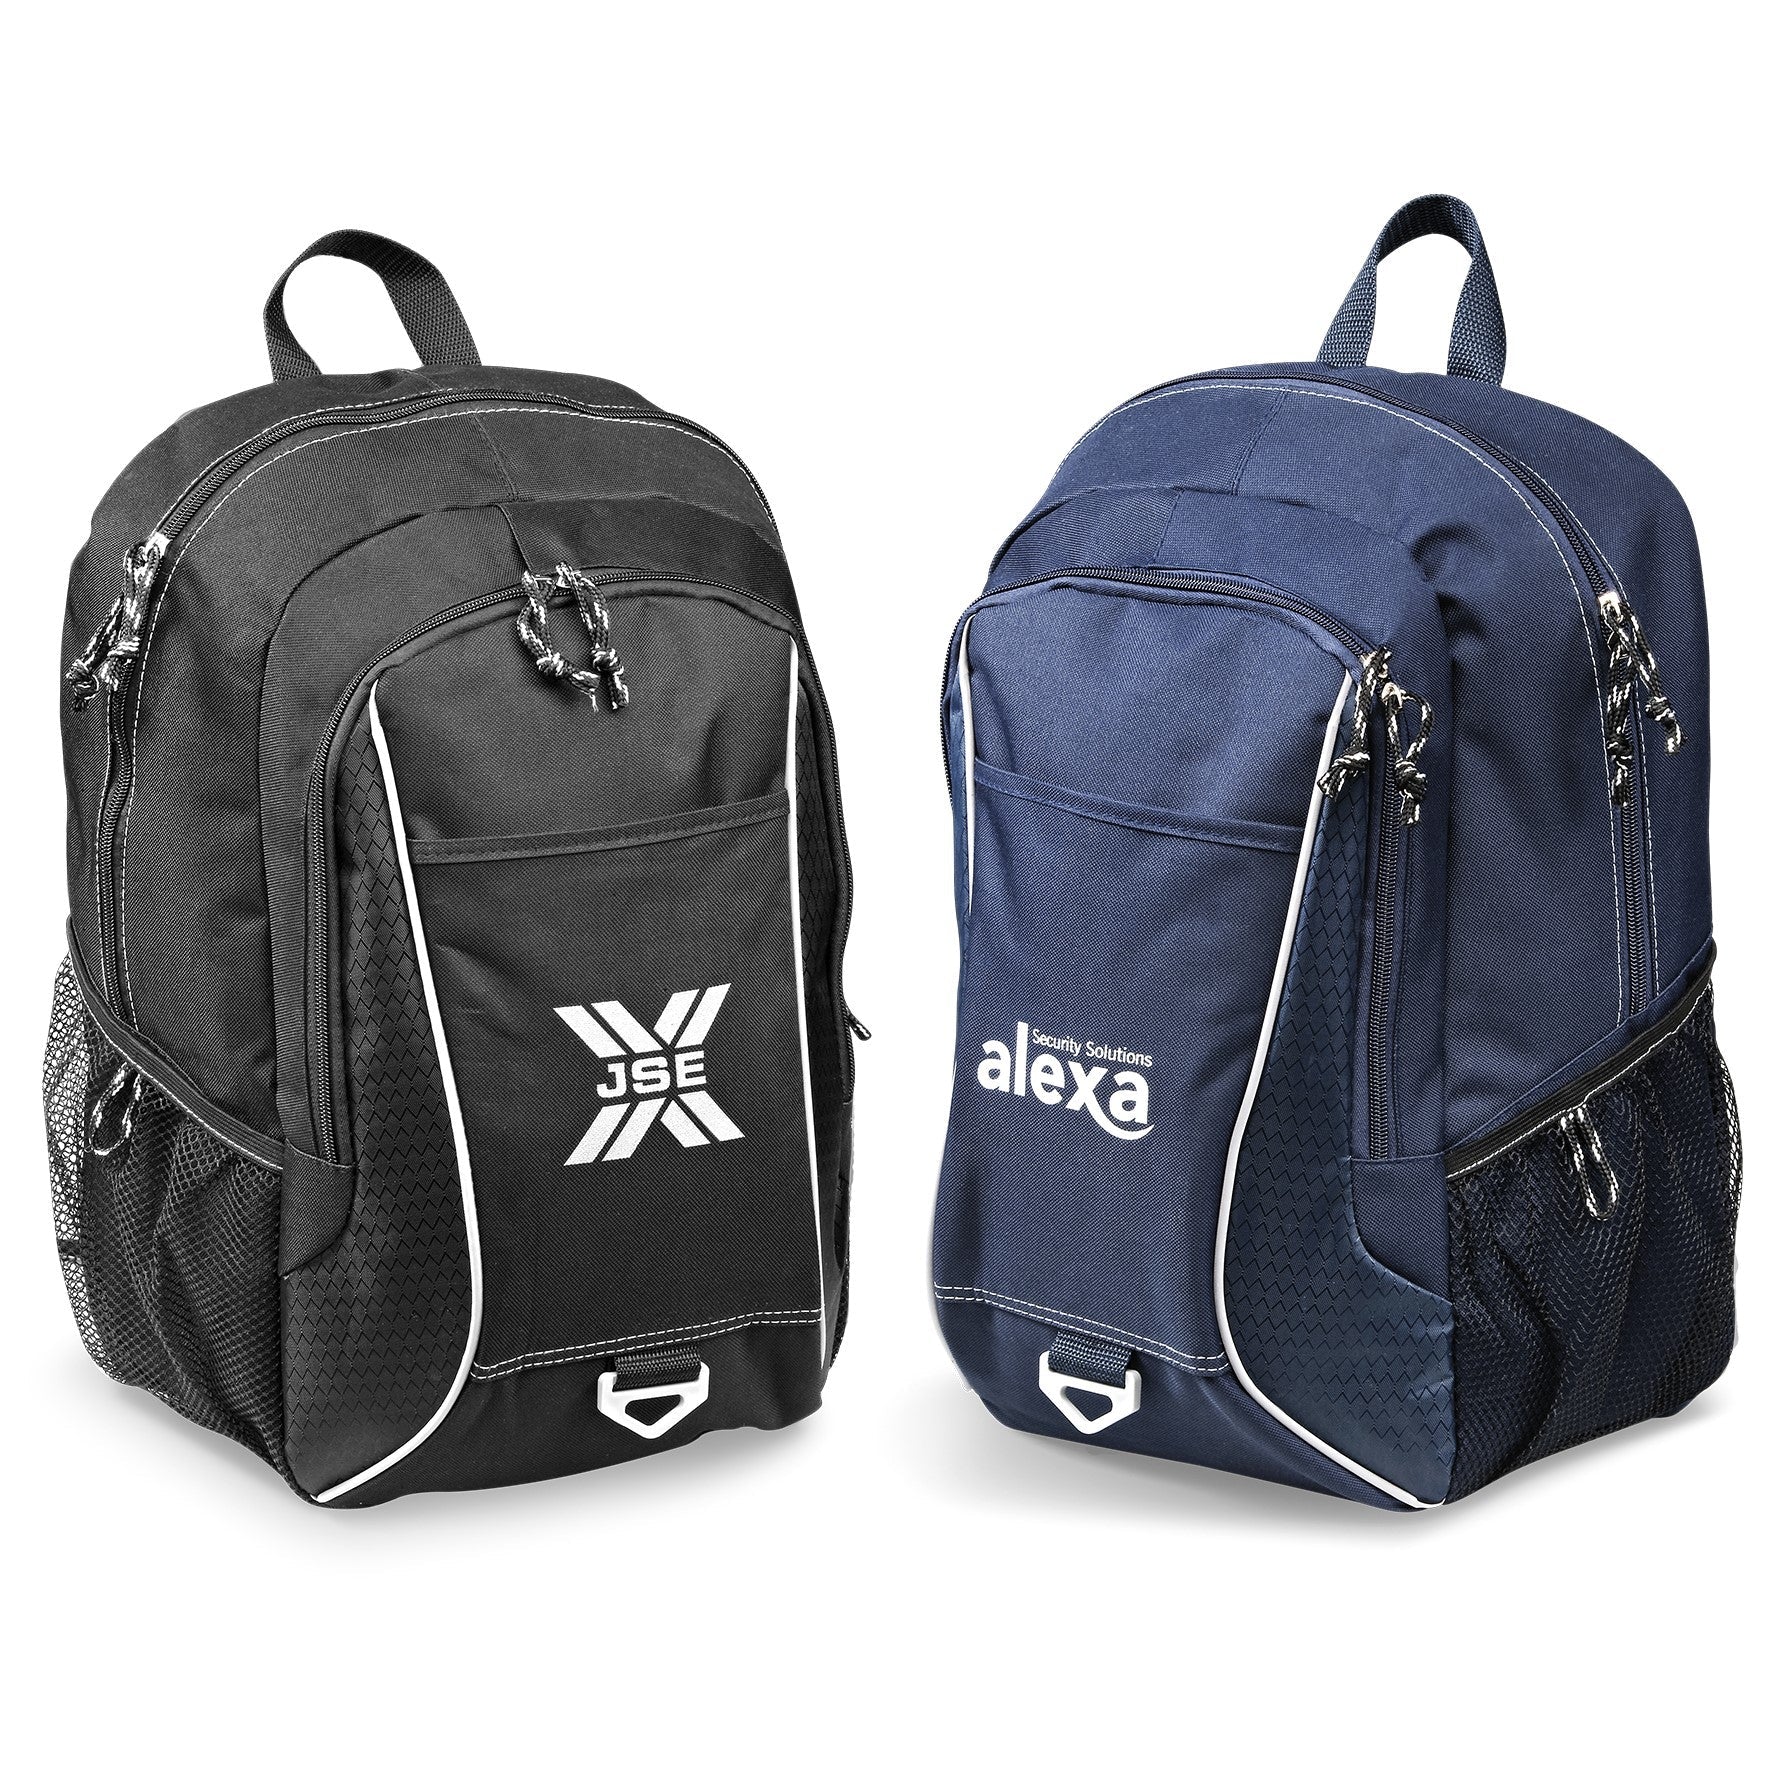 Apex Tech Backpack-Backpacks-Navy-N